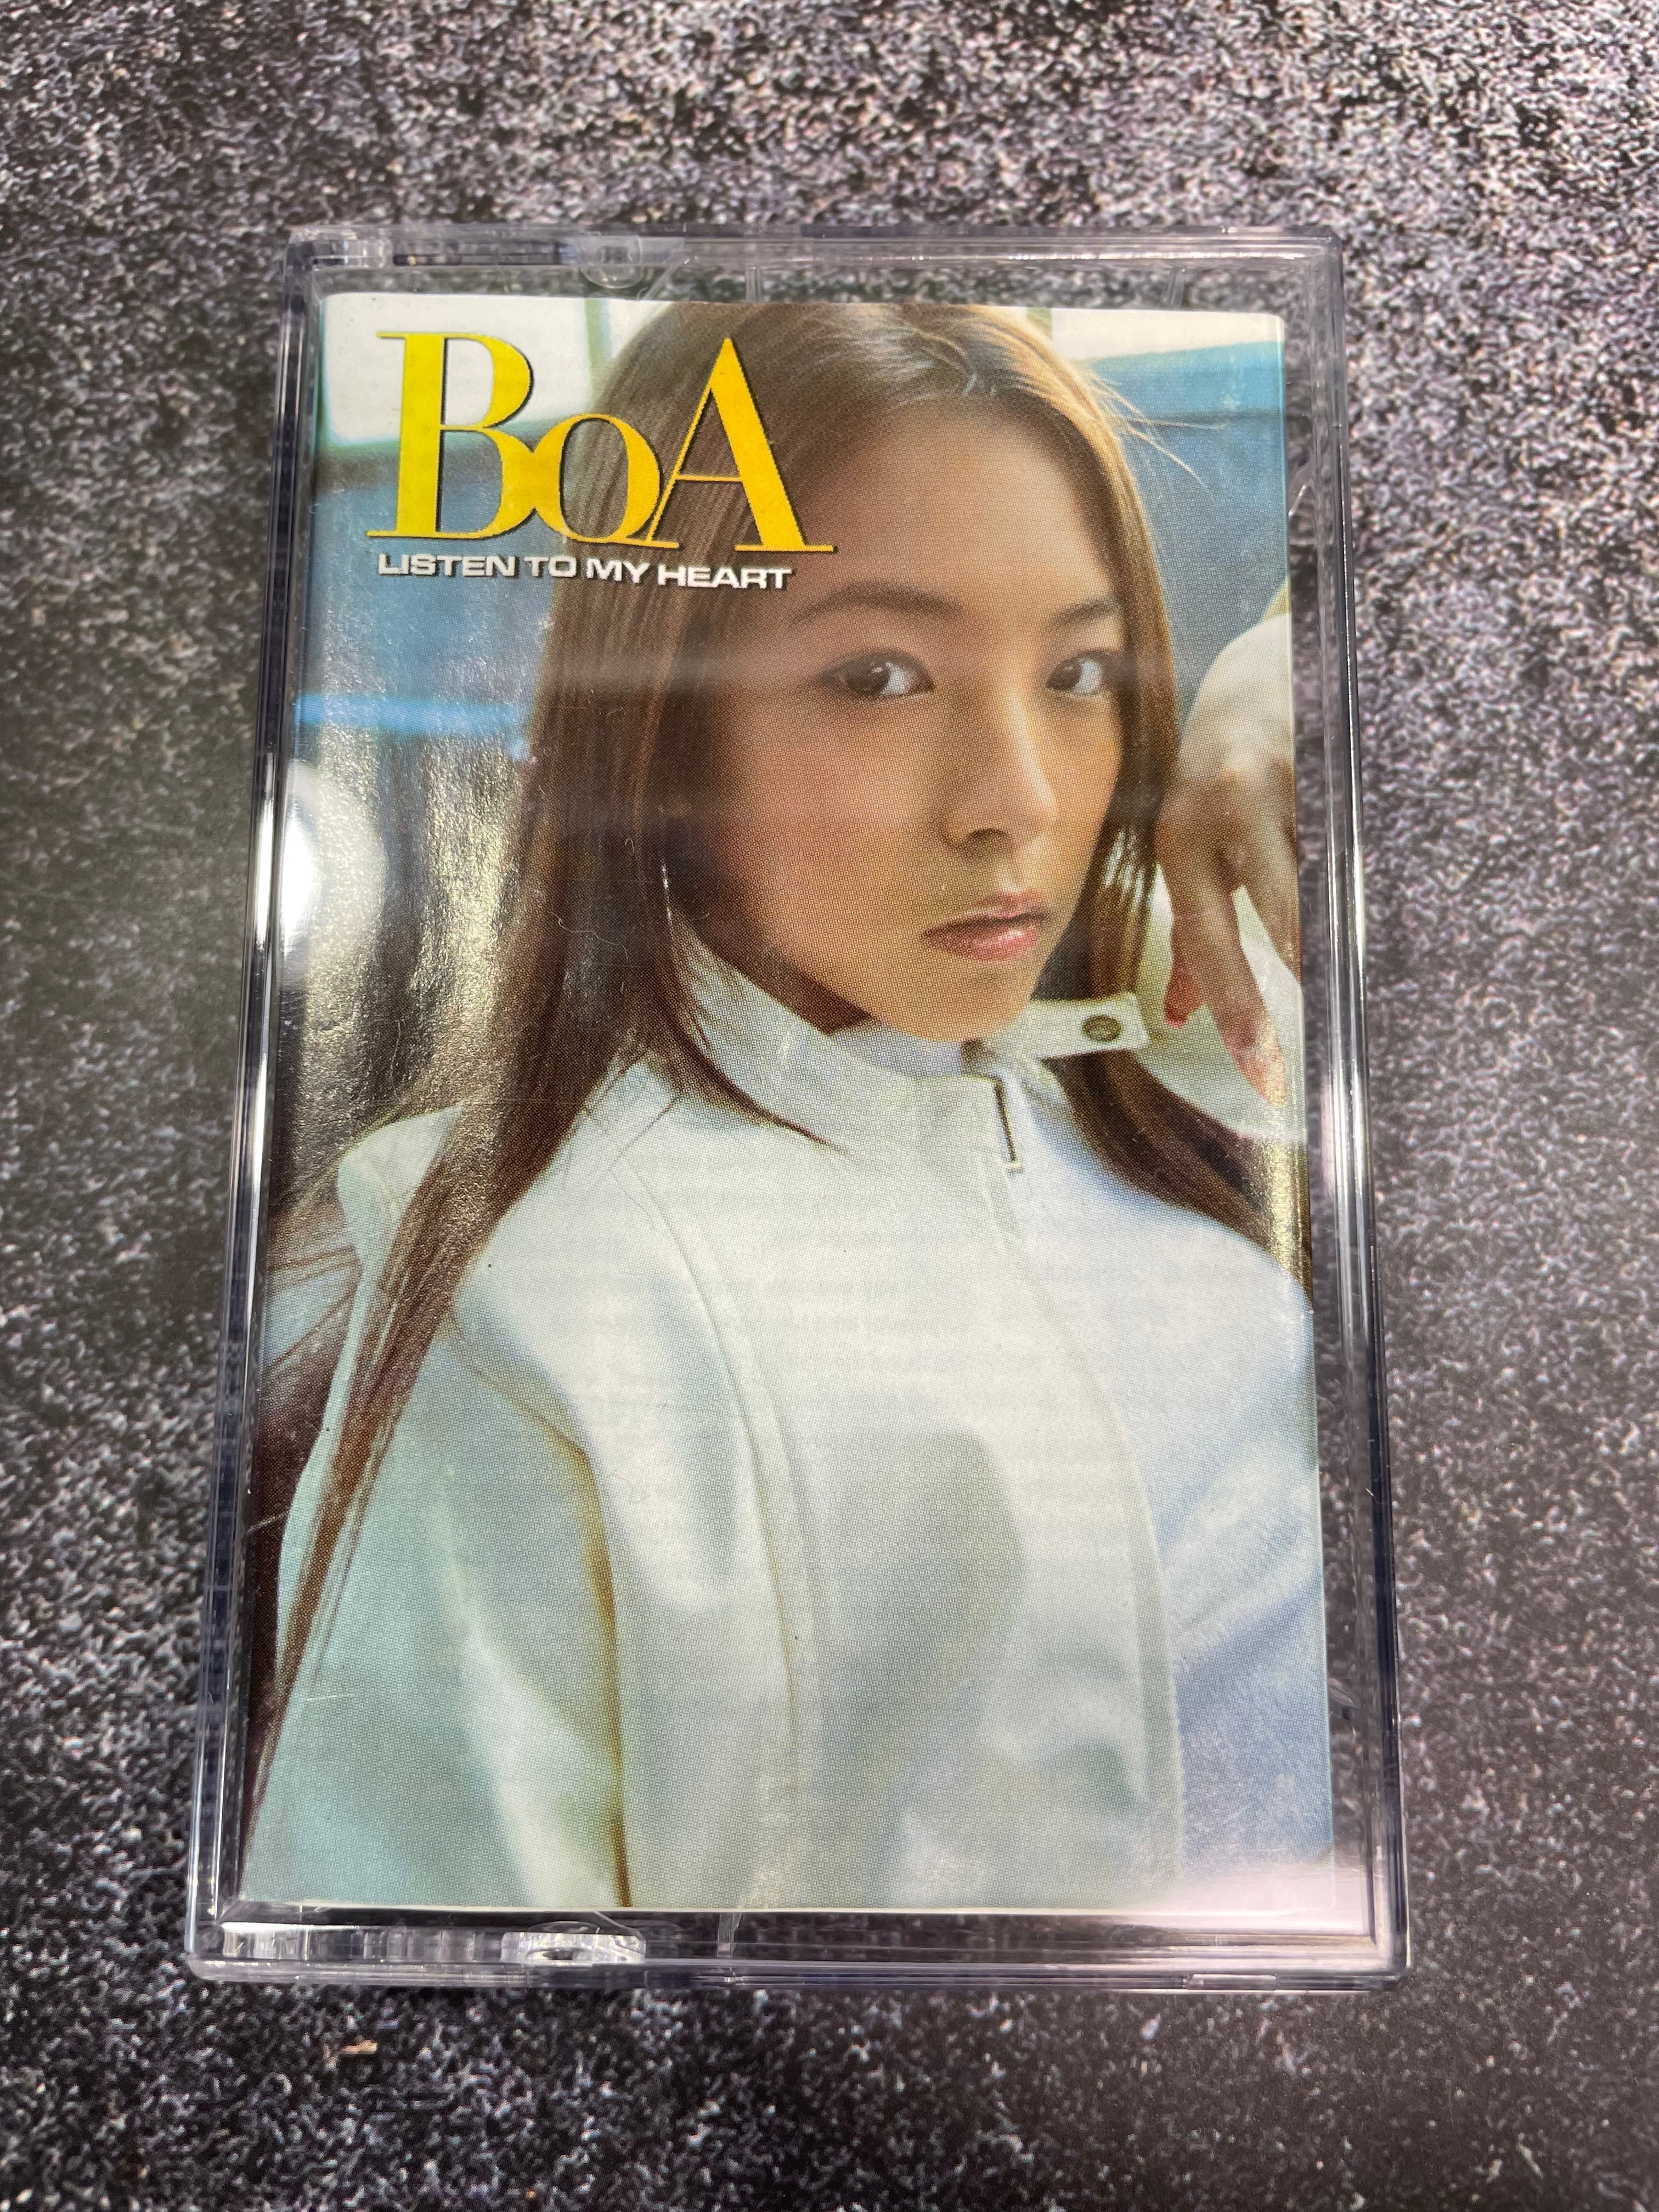 ポップス/ロック(邦楽)ID;Peace B　BoA　レコード